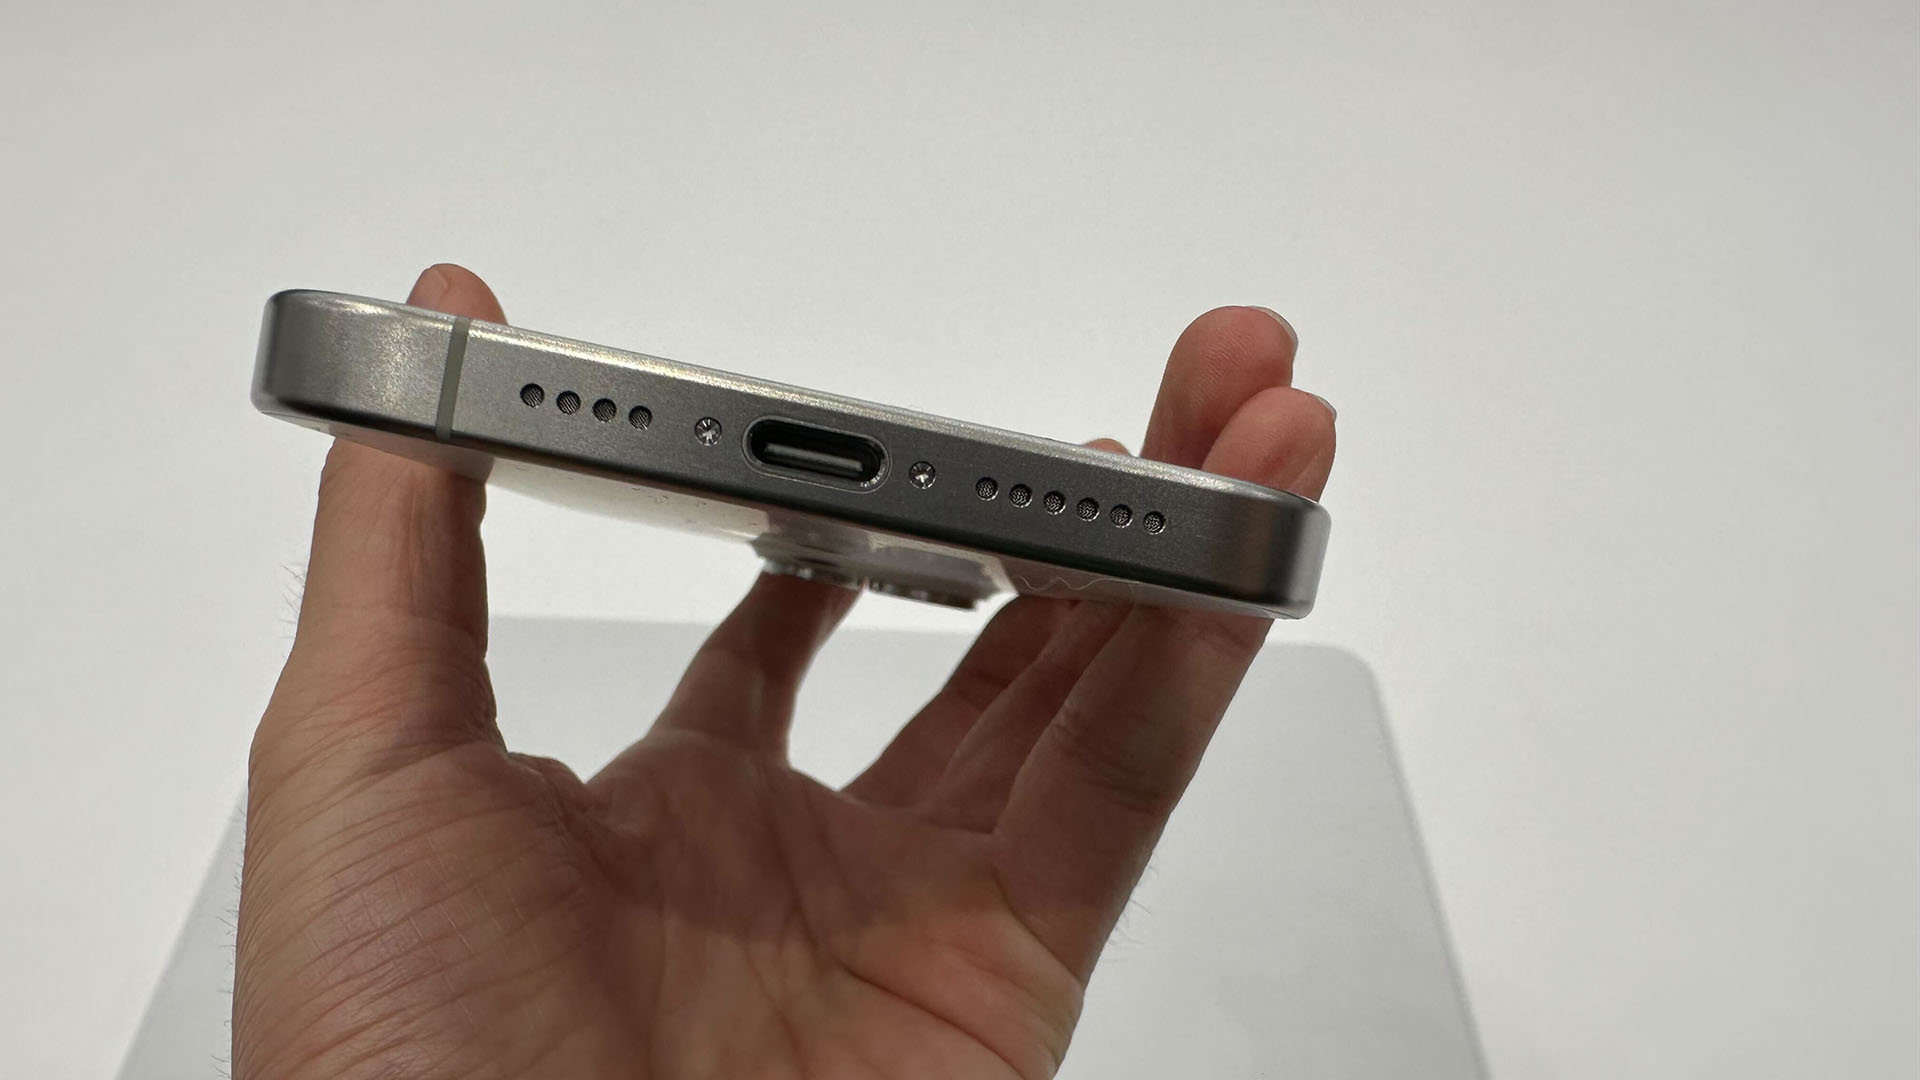 Adaptateur USB Type C à HDMI pour samsung iphone 15 pro max